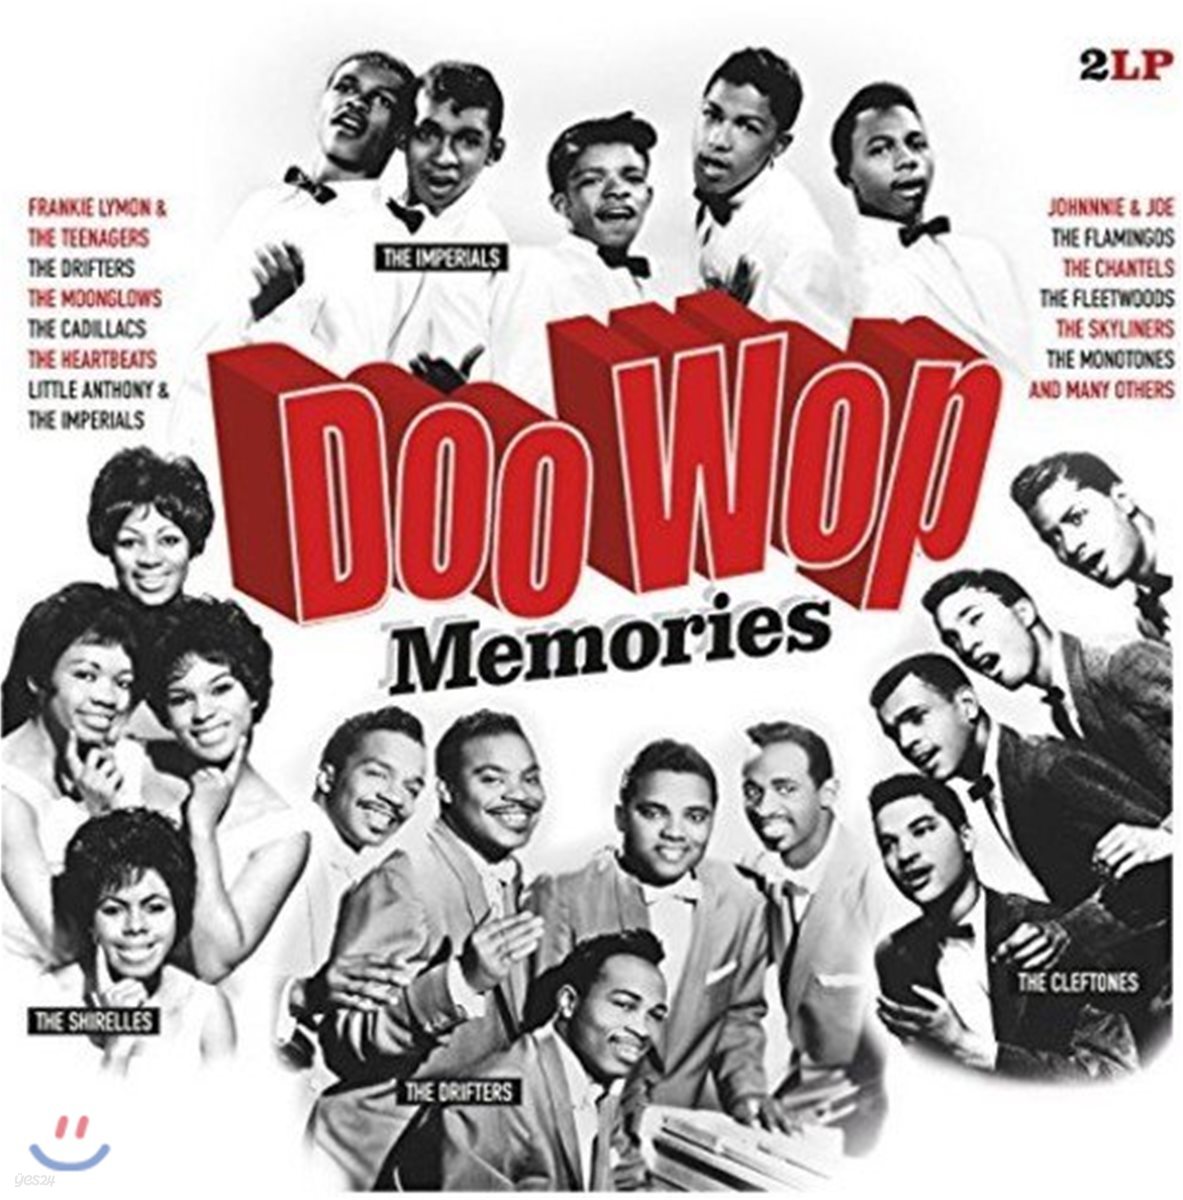 1950-60년대 알앤비 음악 모음집 / 두왑 (Doo Wop Memories) [2 LP]